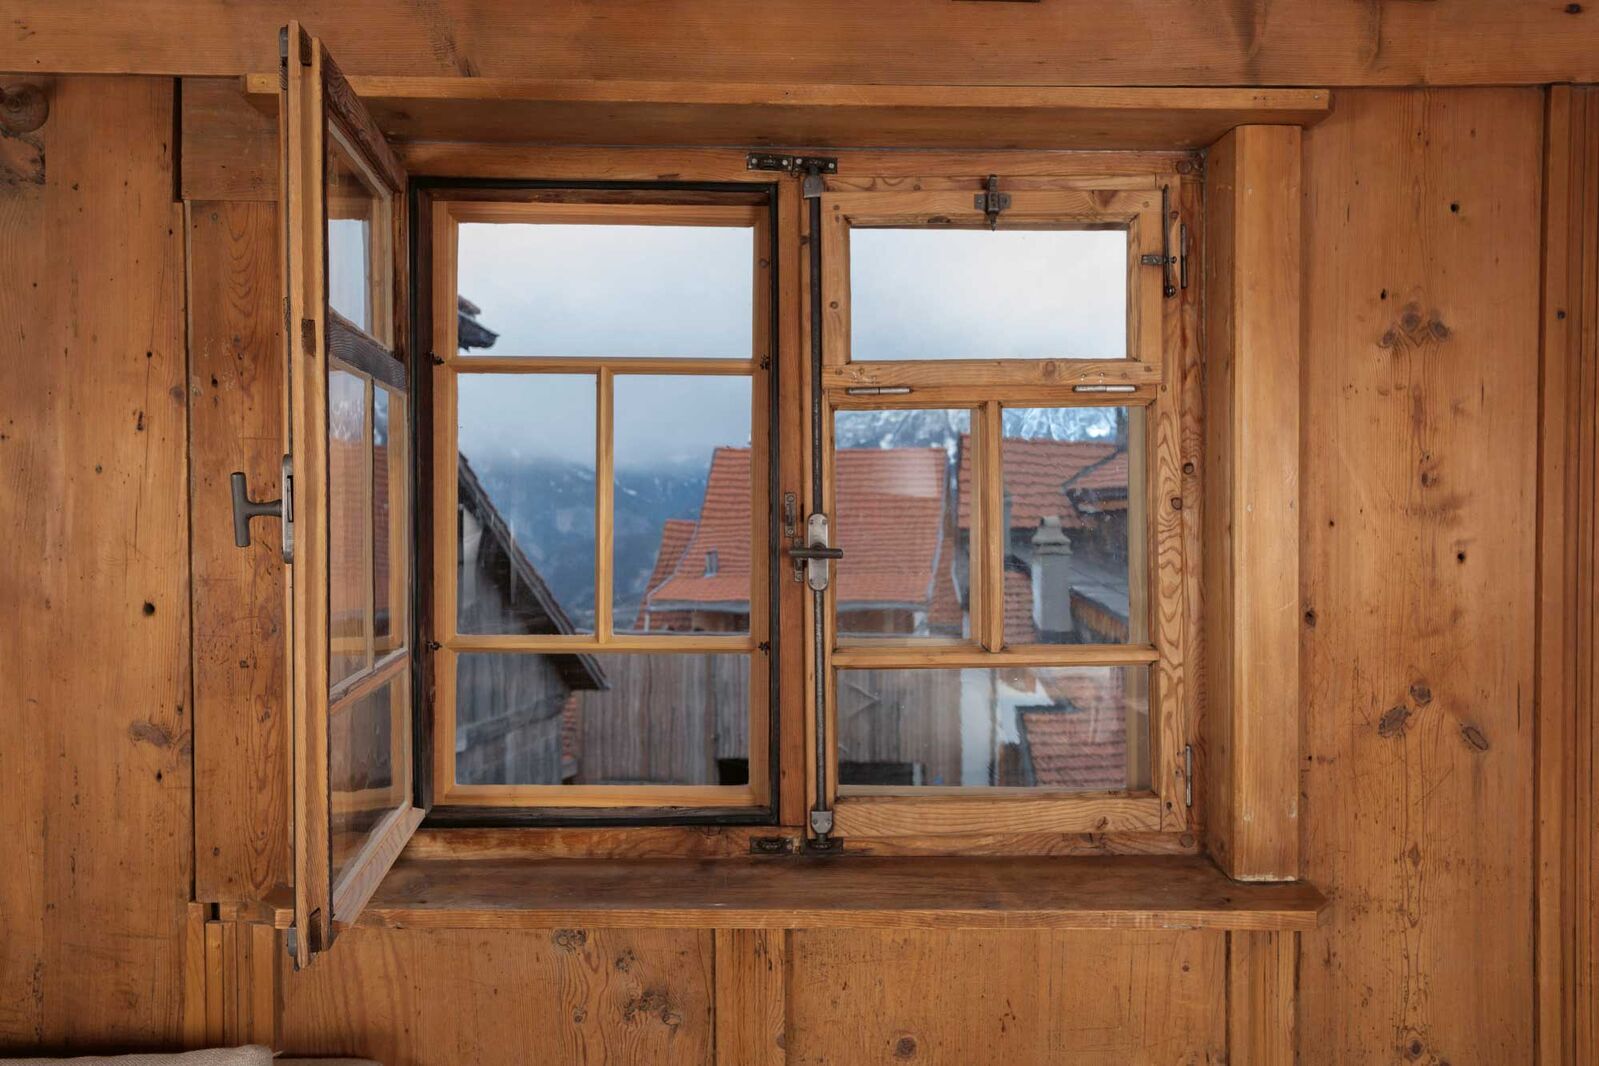 Die Erhaltung der historischen Fenster ist aus gestalterischen und denkmalpflegerischen Überlegungen sinnvoll und zahlt sich monetär aus.